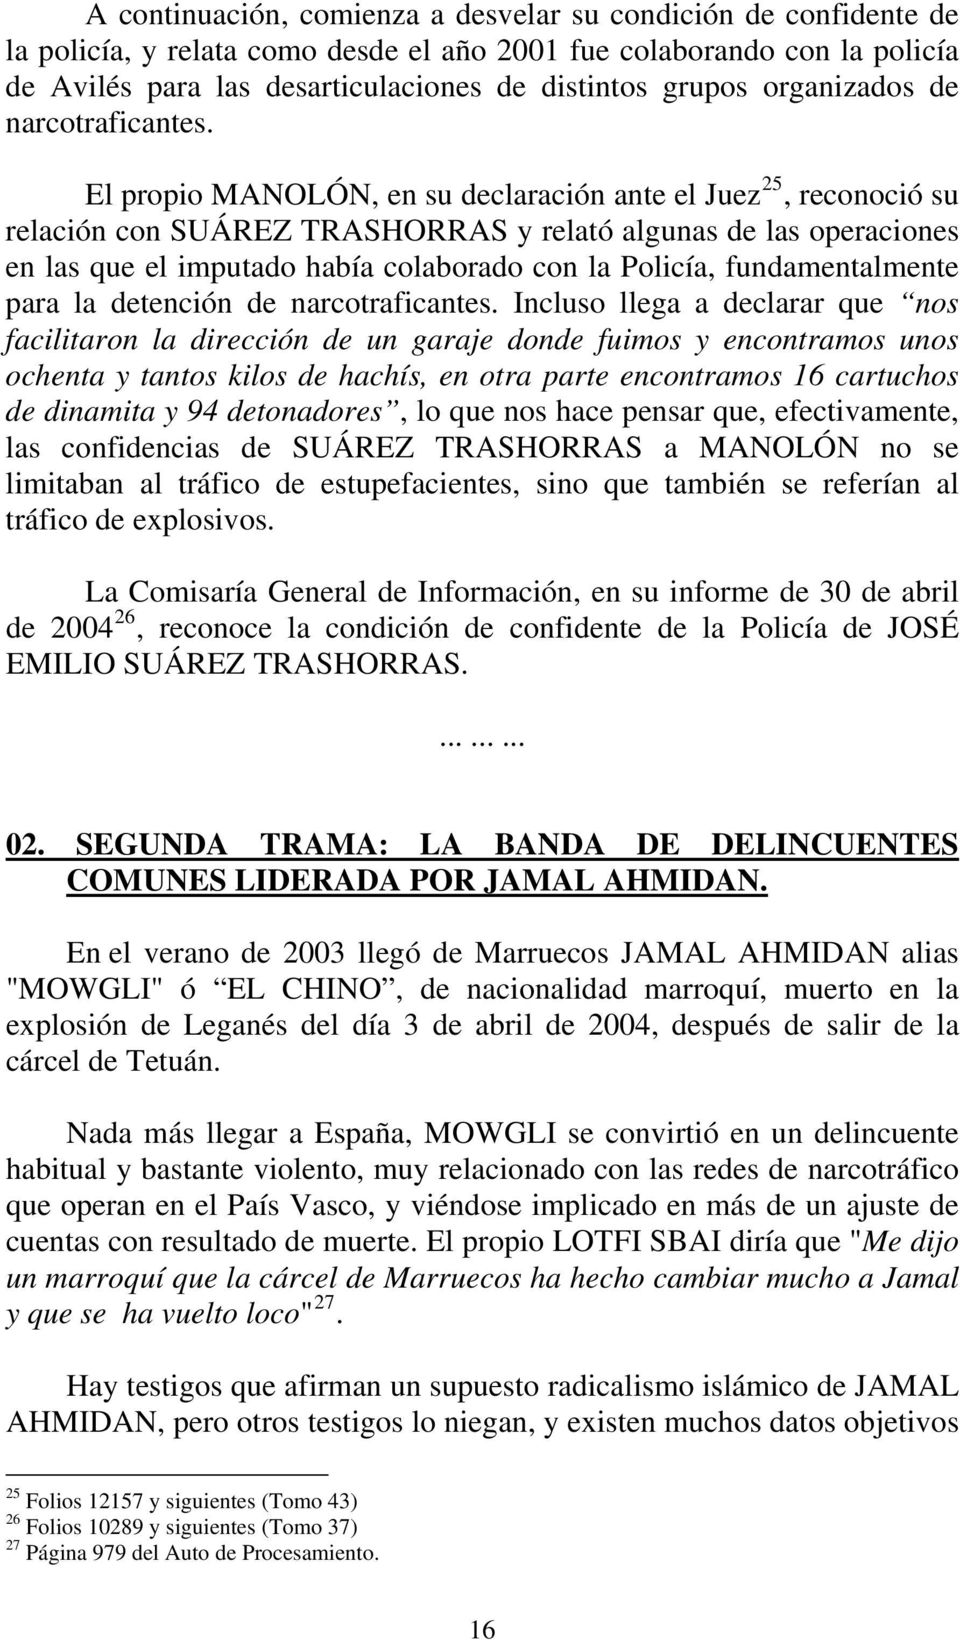 El propio MANOLÓN, en su declaración ante el Juez 25, reconoció su relación con SUÁREZ TRASHORRAS y relató algunas de las operaciones en las que el imputado había colaborado con la Policía,